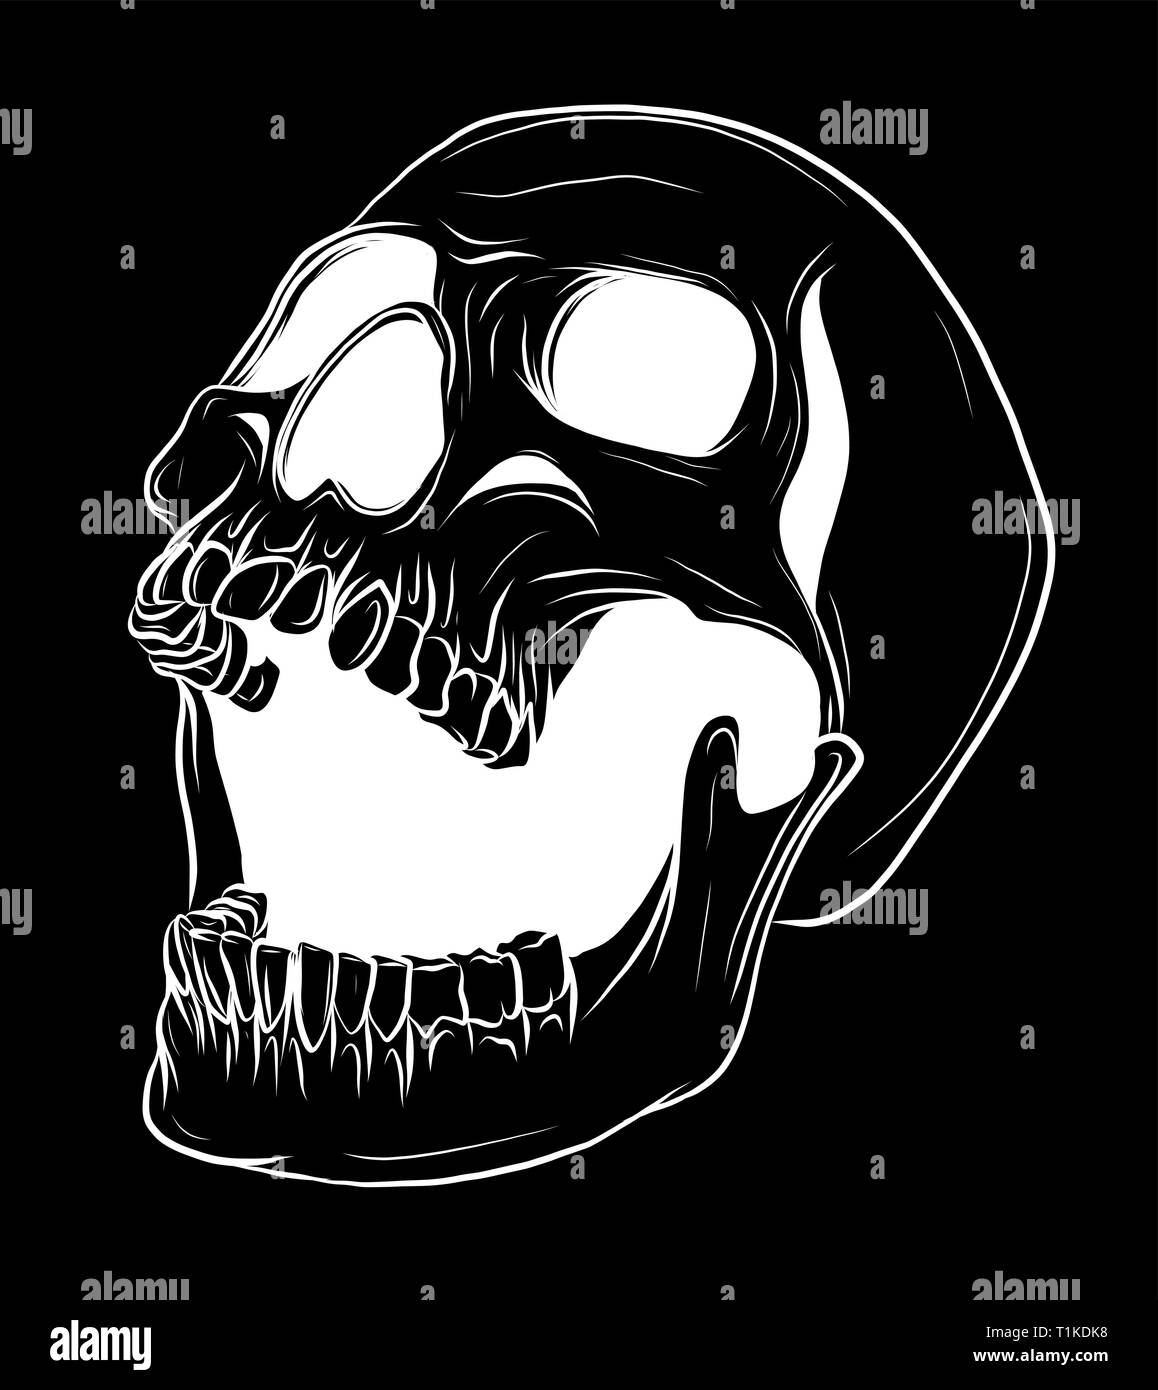 Vector illustration crâne dessiné à la main, Collection de crânes, noyau dur crâne Vector Art Illustration de Vecteur